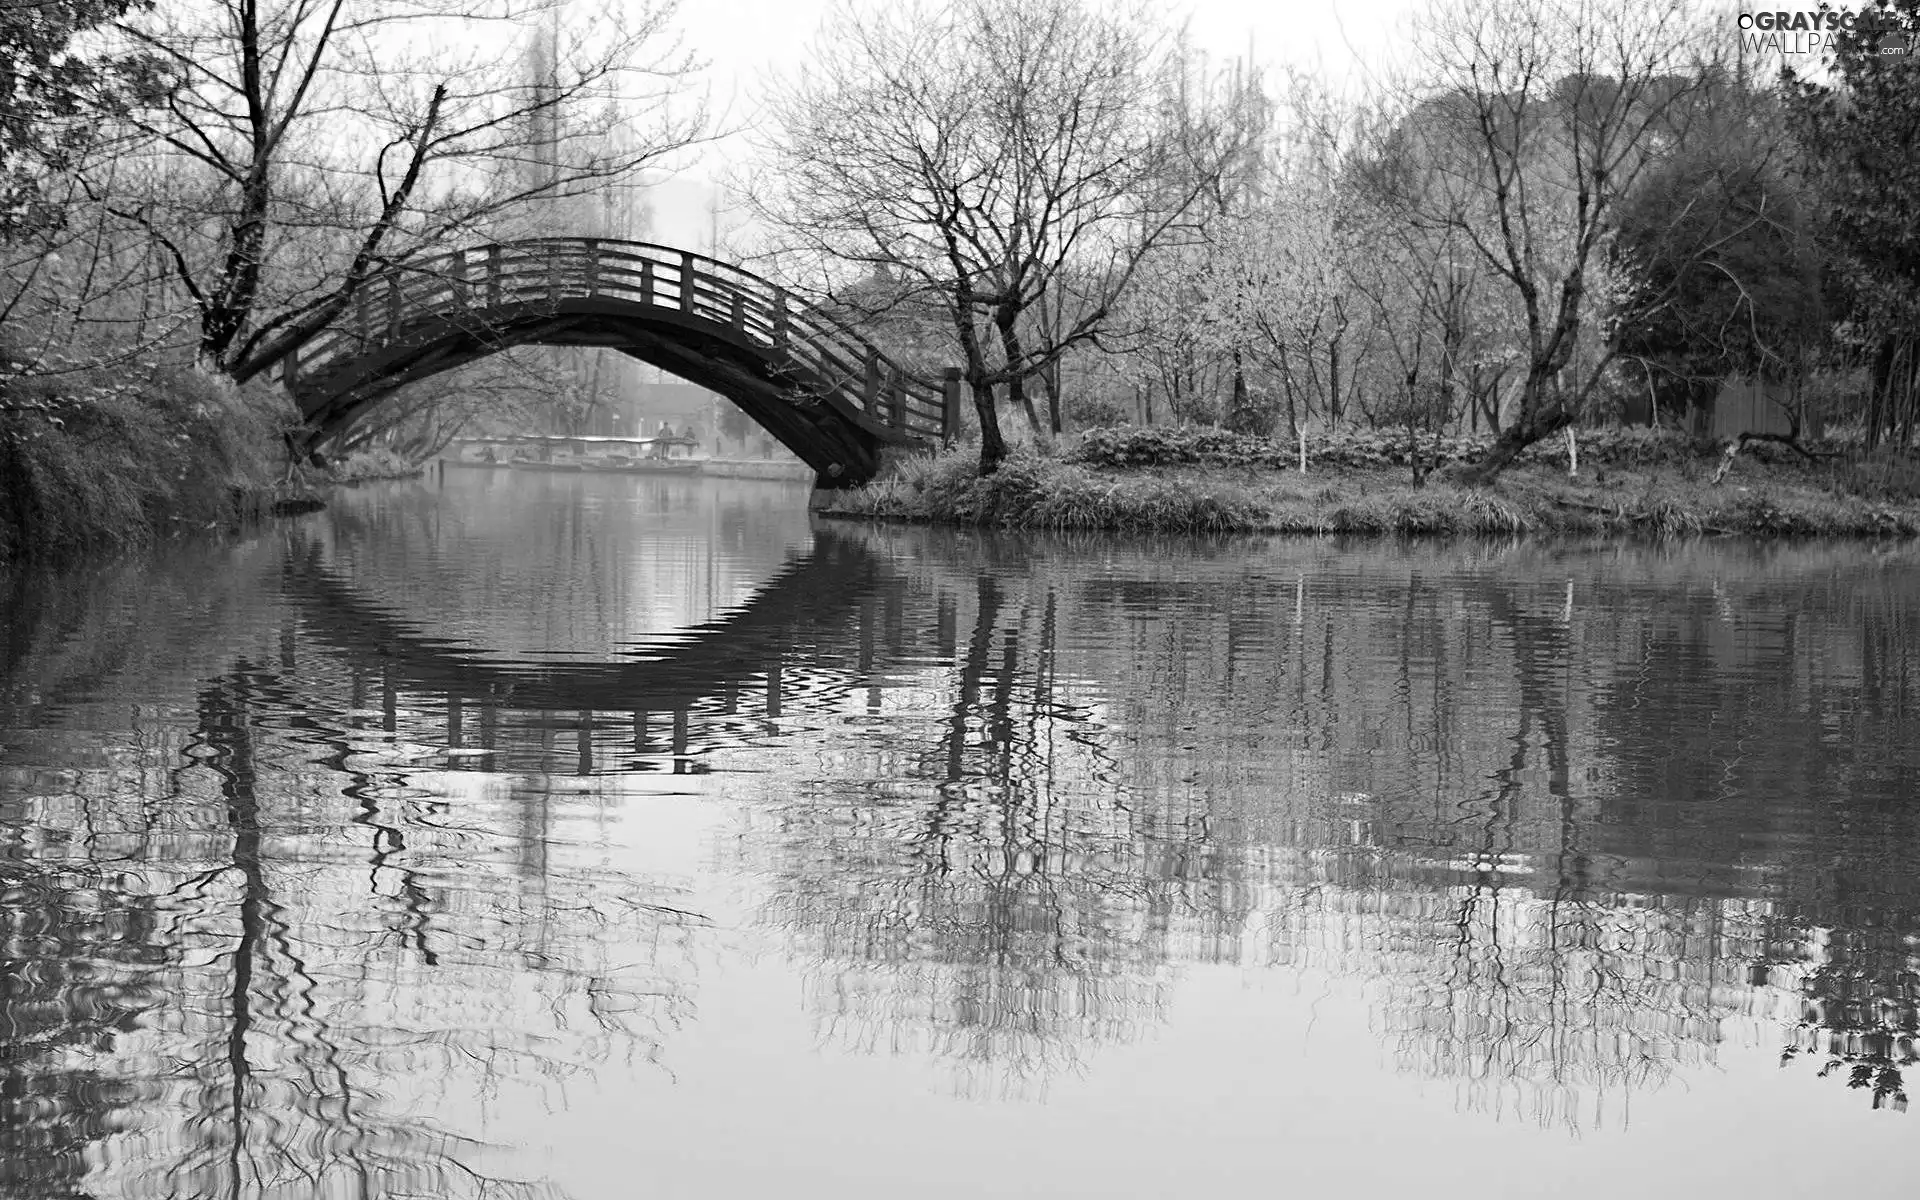 reflection, River, bridges